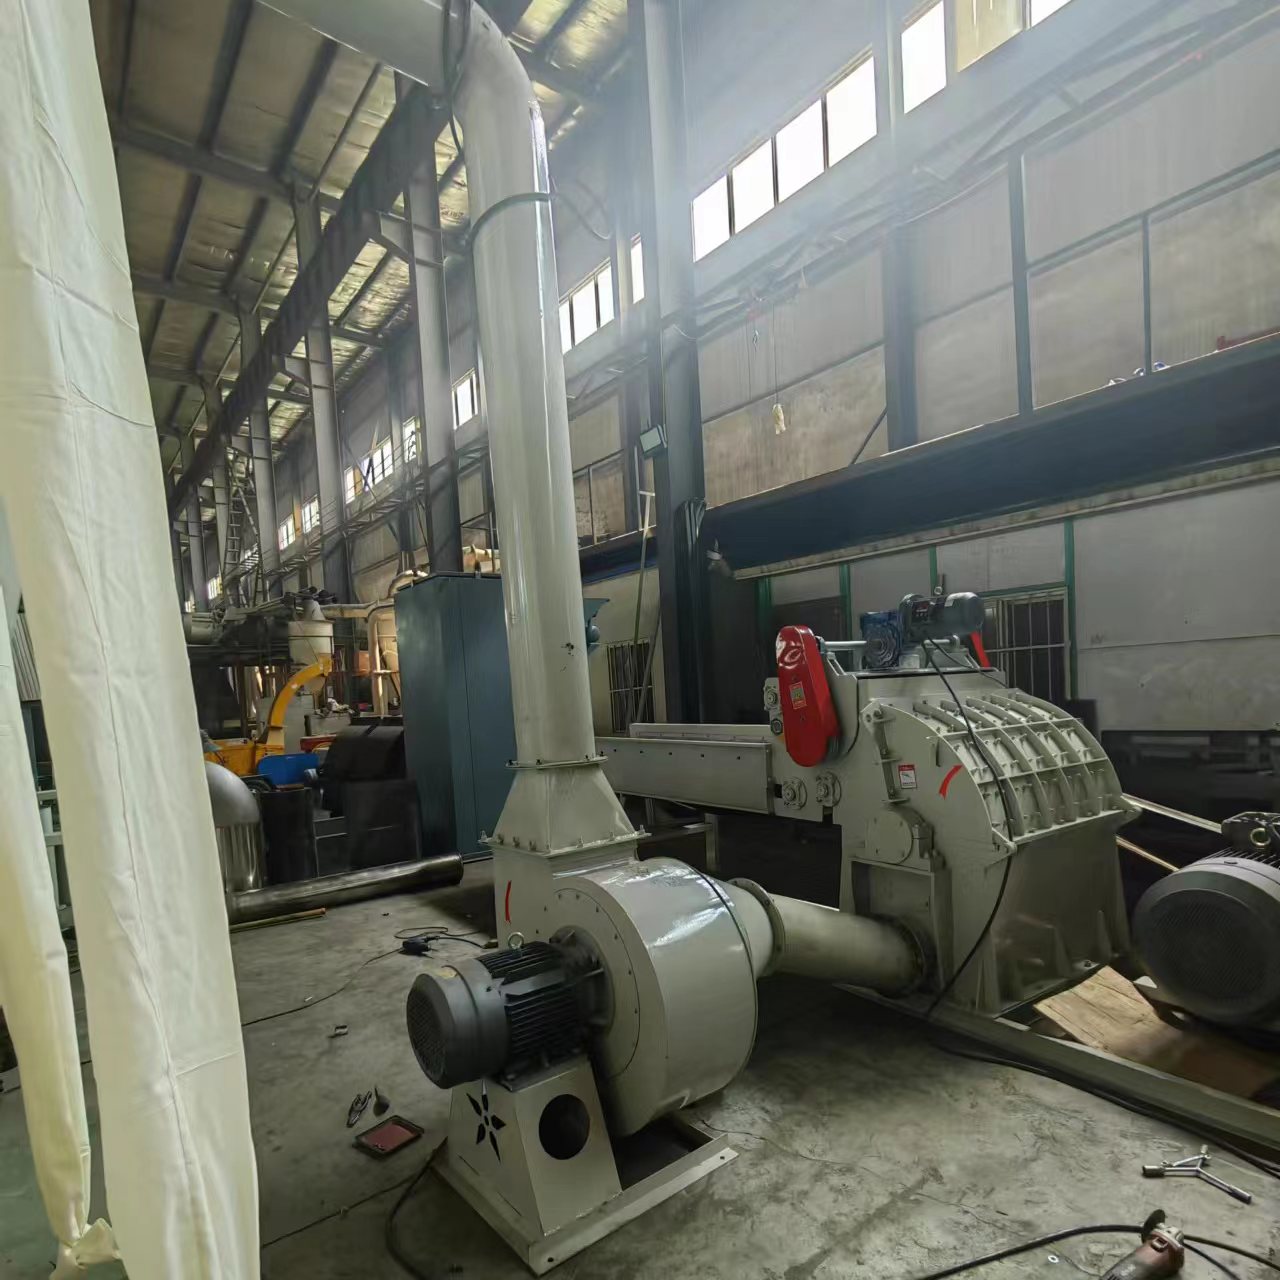 河南磨粉机厂家供应各种型号刨花板磨粉机升级版大型塑料筐粉碎机